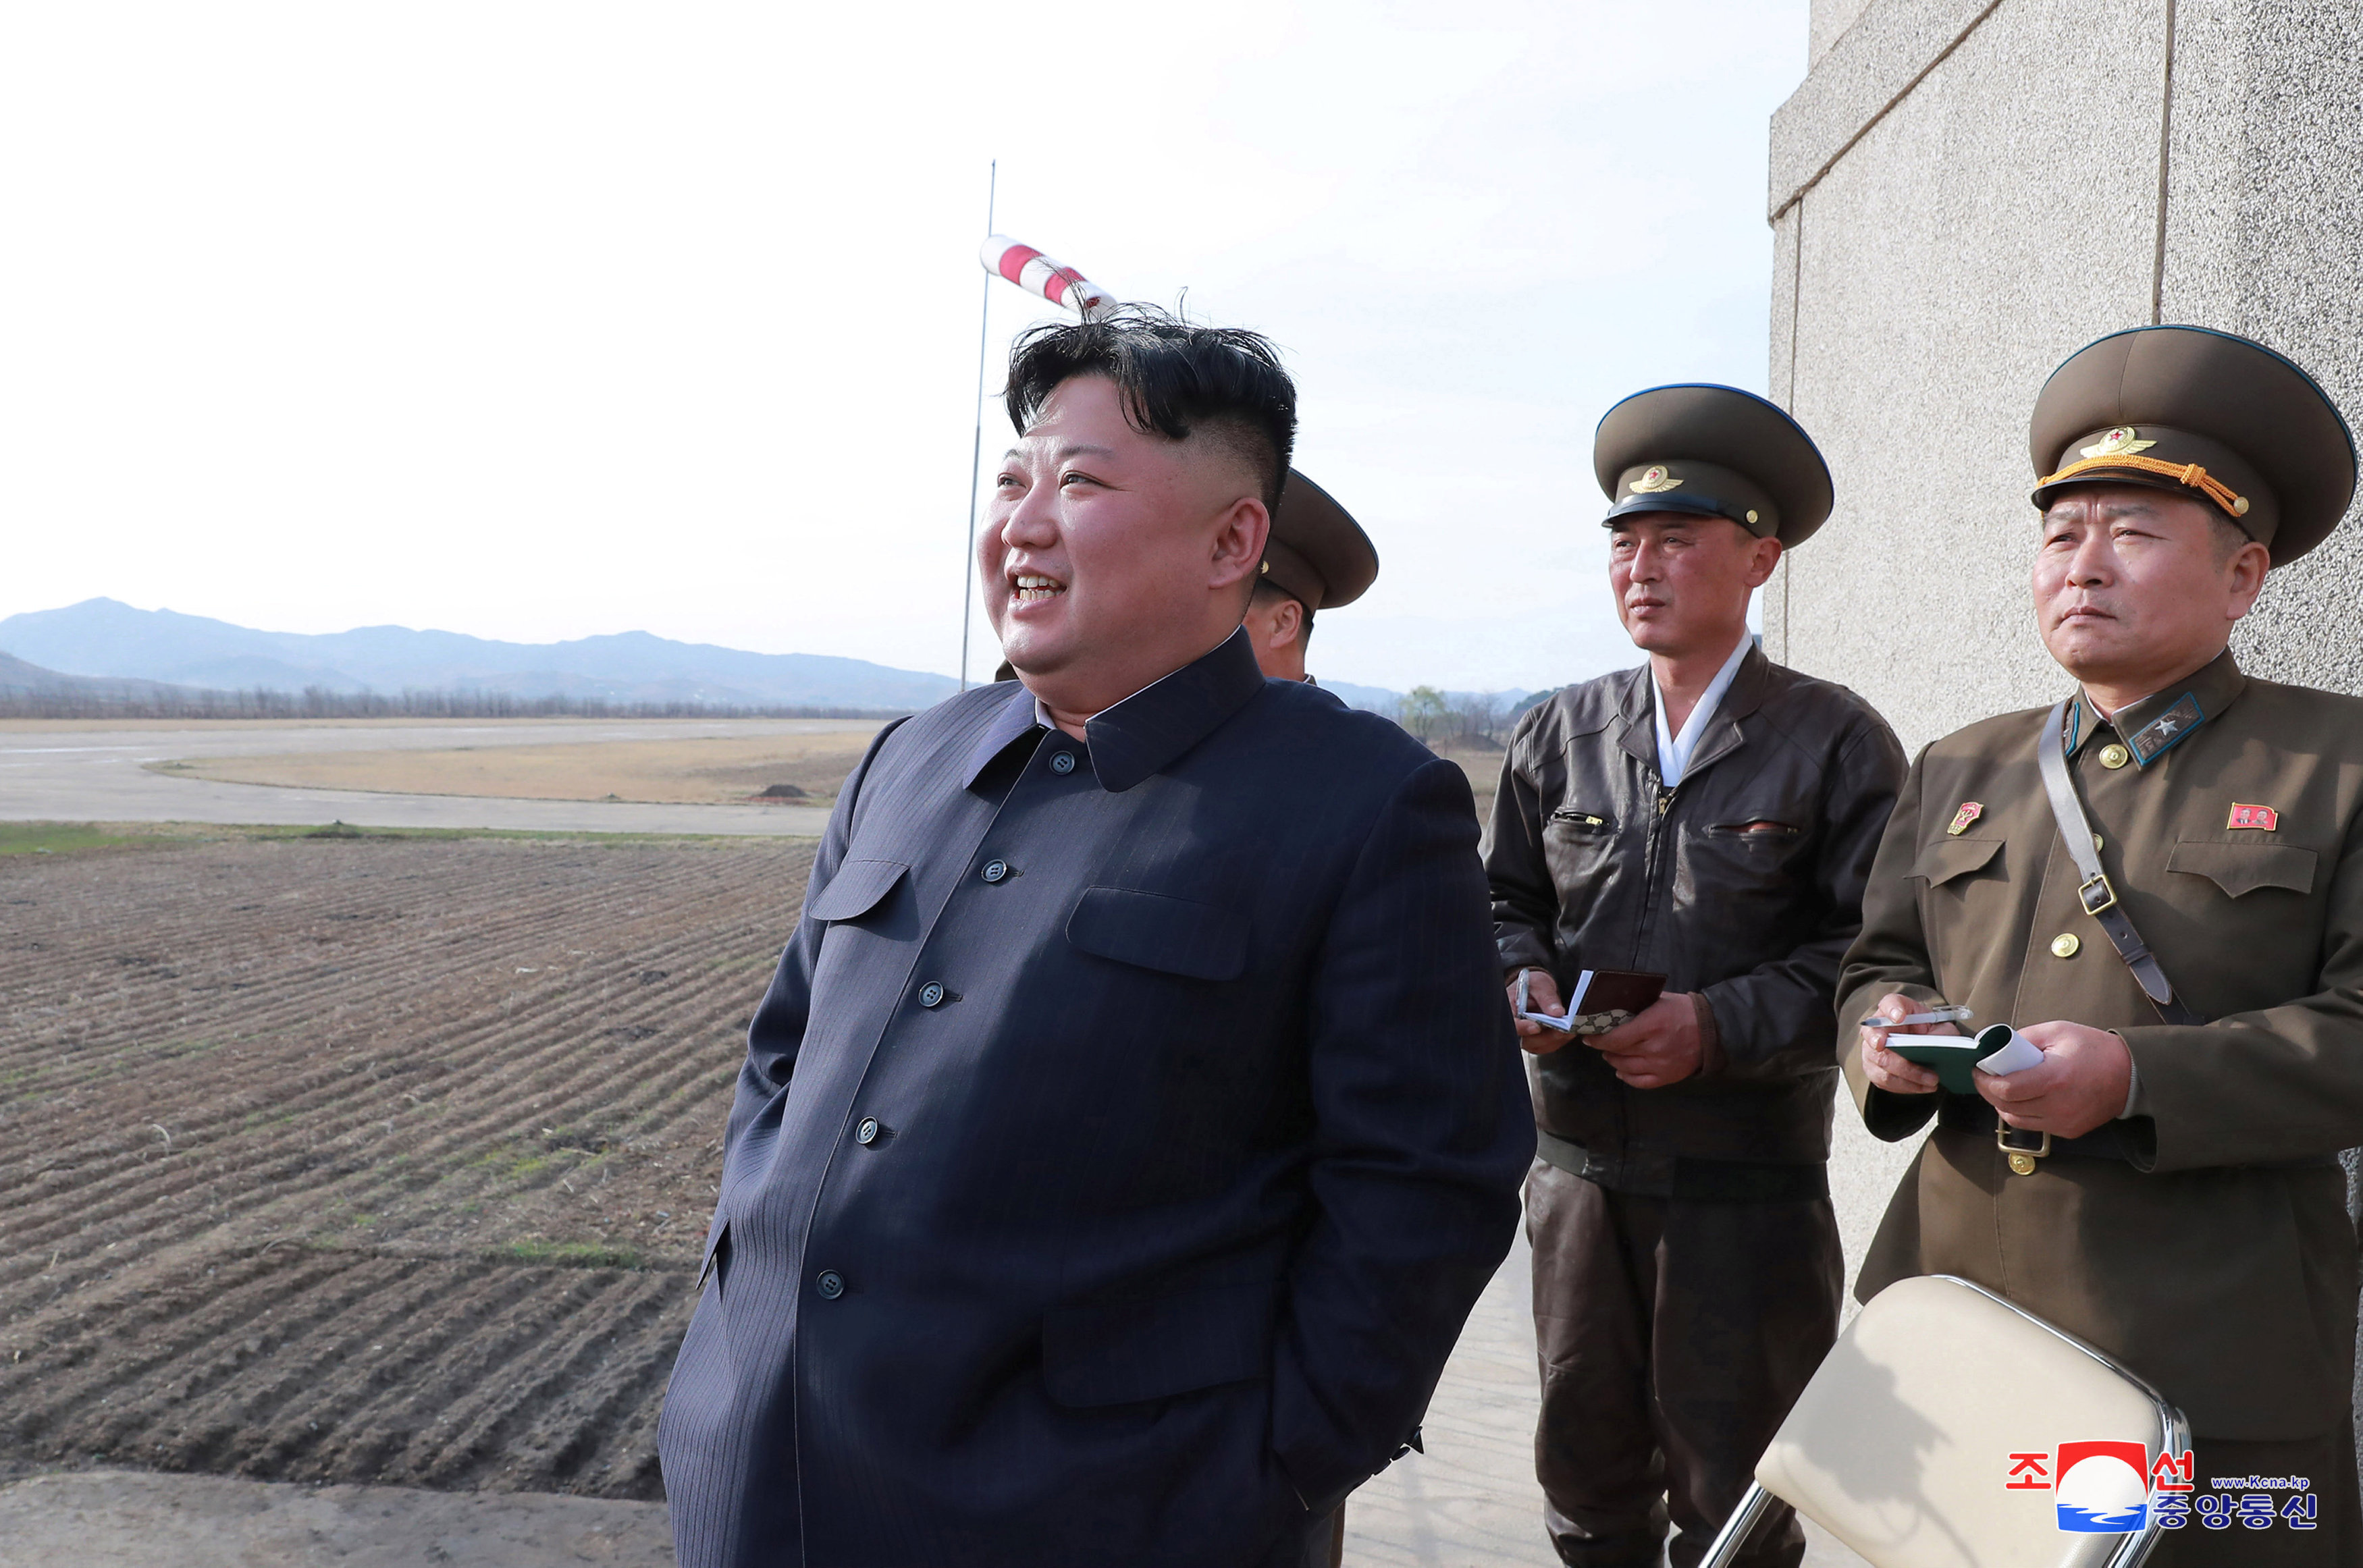 金正恩周二突击视察朝鲜空军部队，并指导飞行员训练。他对完成所有飞行命令的飞机多次露出微笑 。-朝中社/路透社-